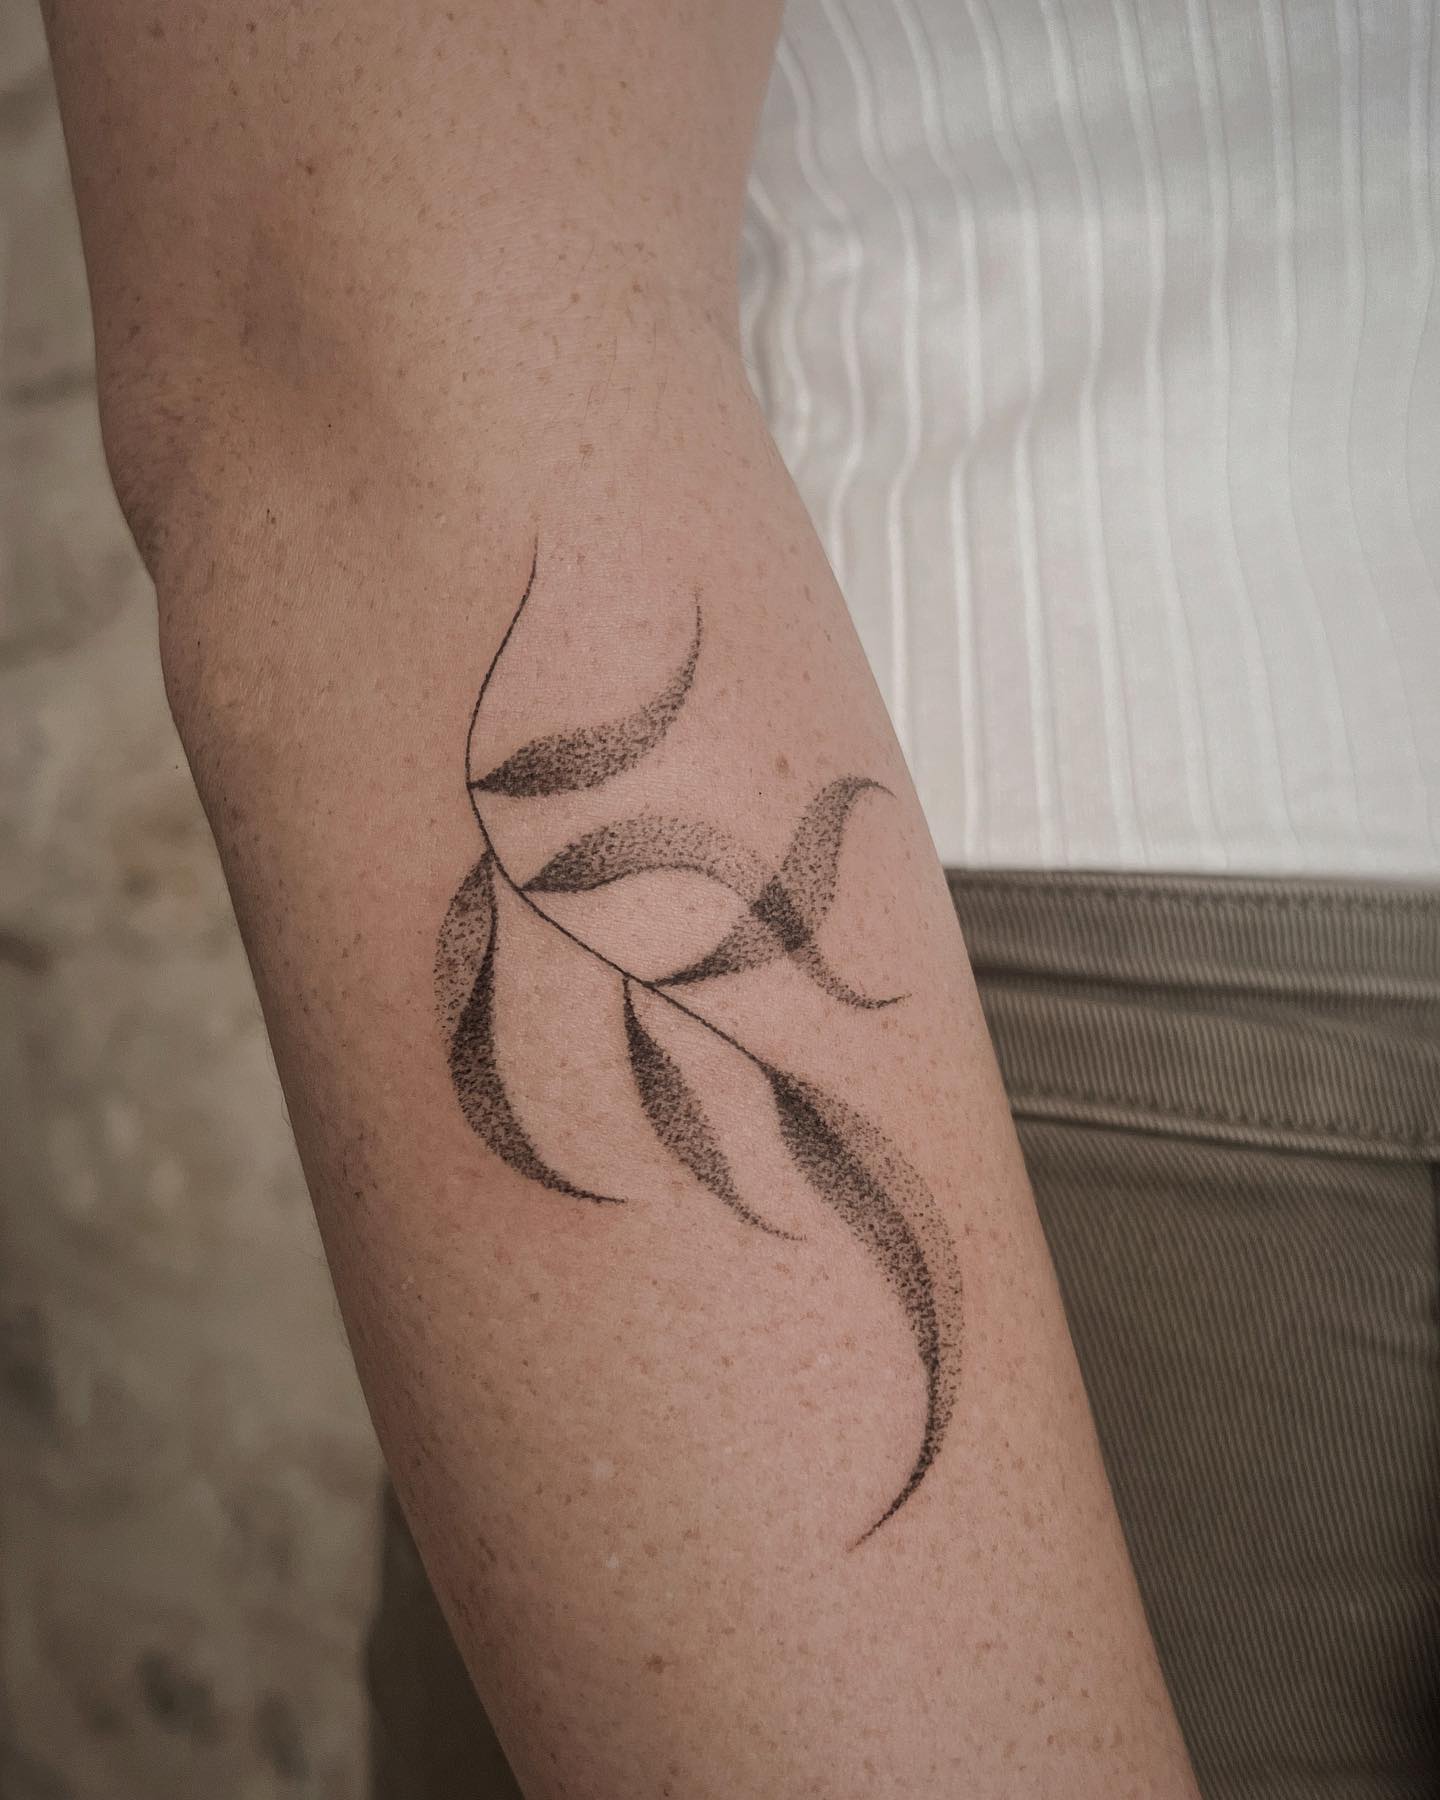 Tatuaje de hoja simple en punto.